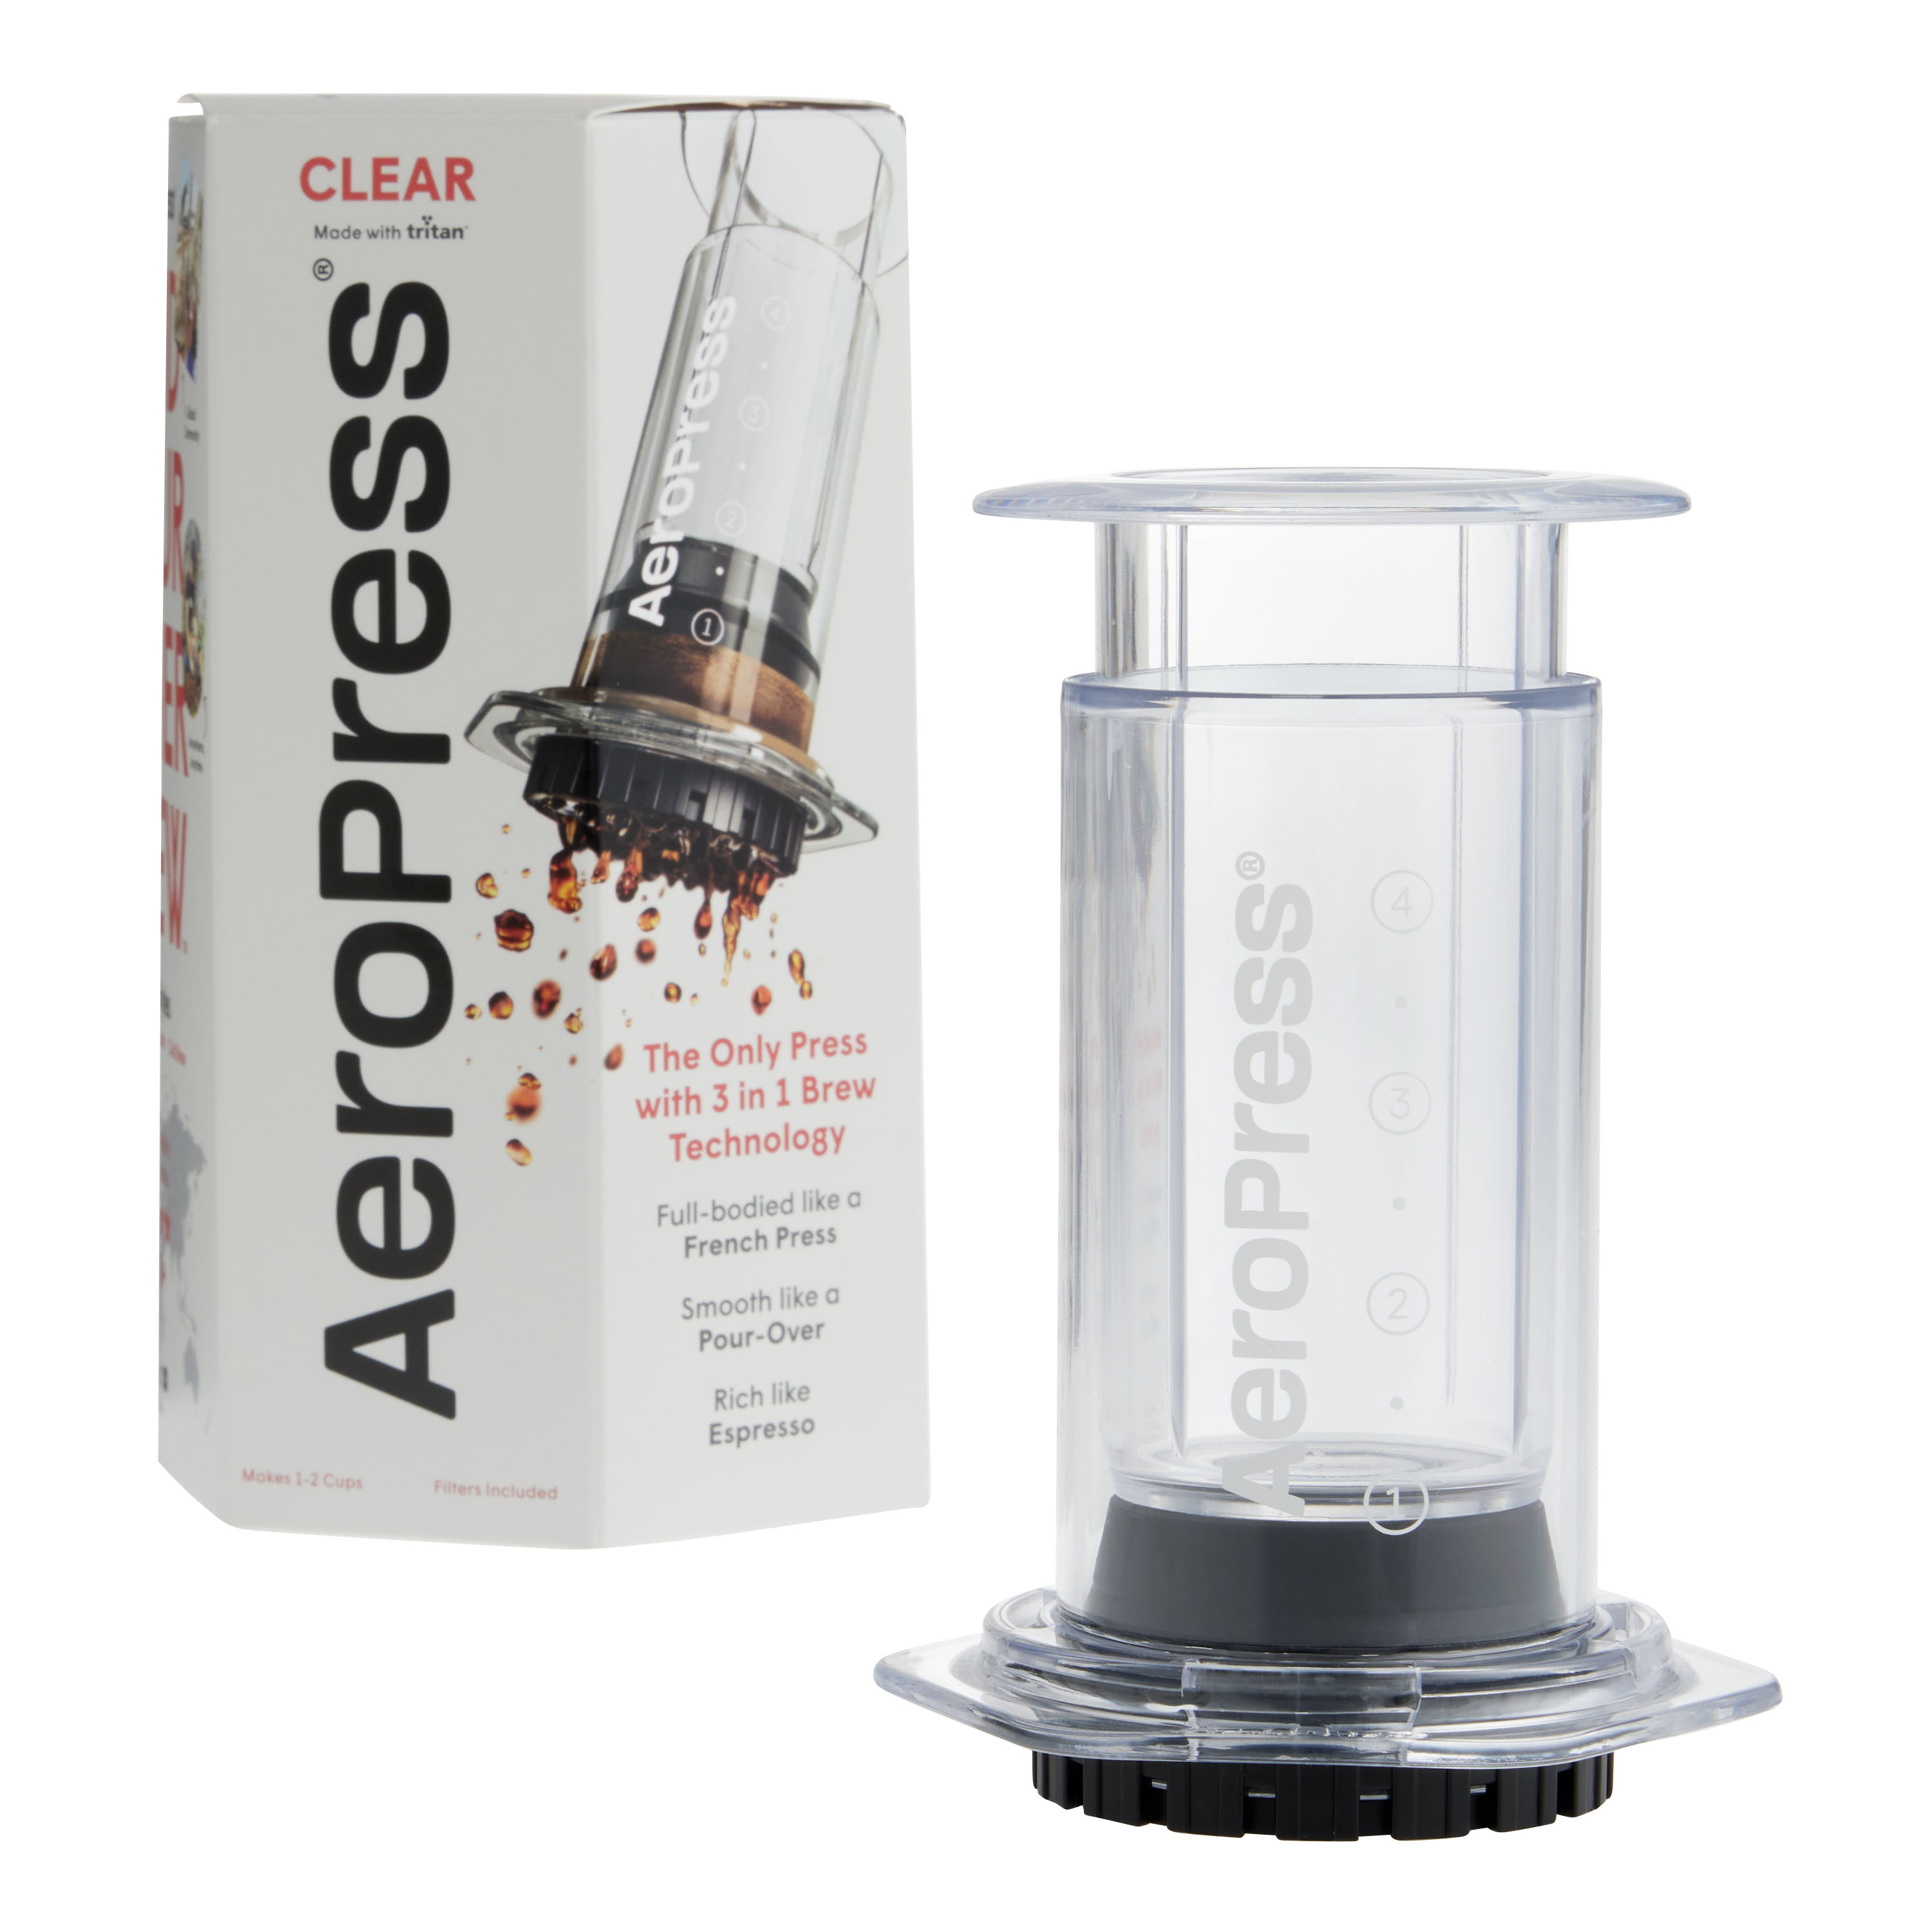 Aeropress Clear Coffee Press : Target